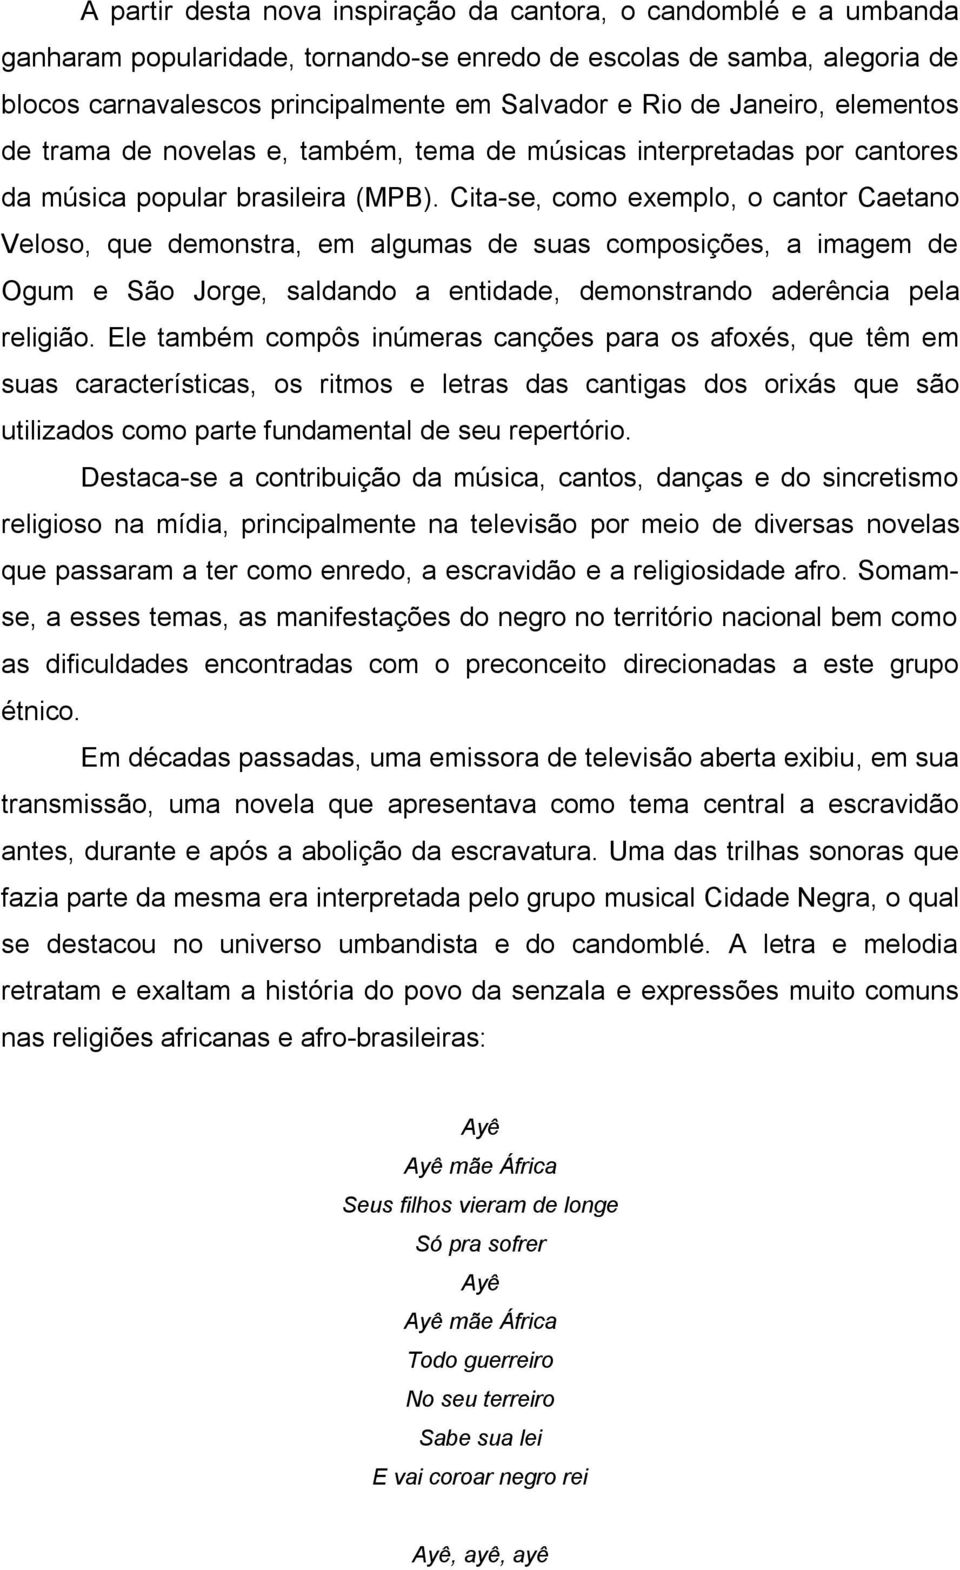 Cita-se, como exemplo, o cantor Caetano Veloso, que demonstra, em algumas de suas composições, a imagem de Ogum e São Jorge, saldando a entidade, demonstrando aderência pela religião.